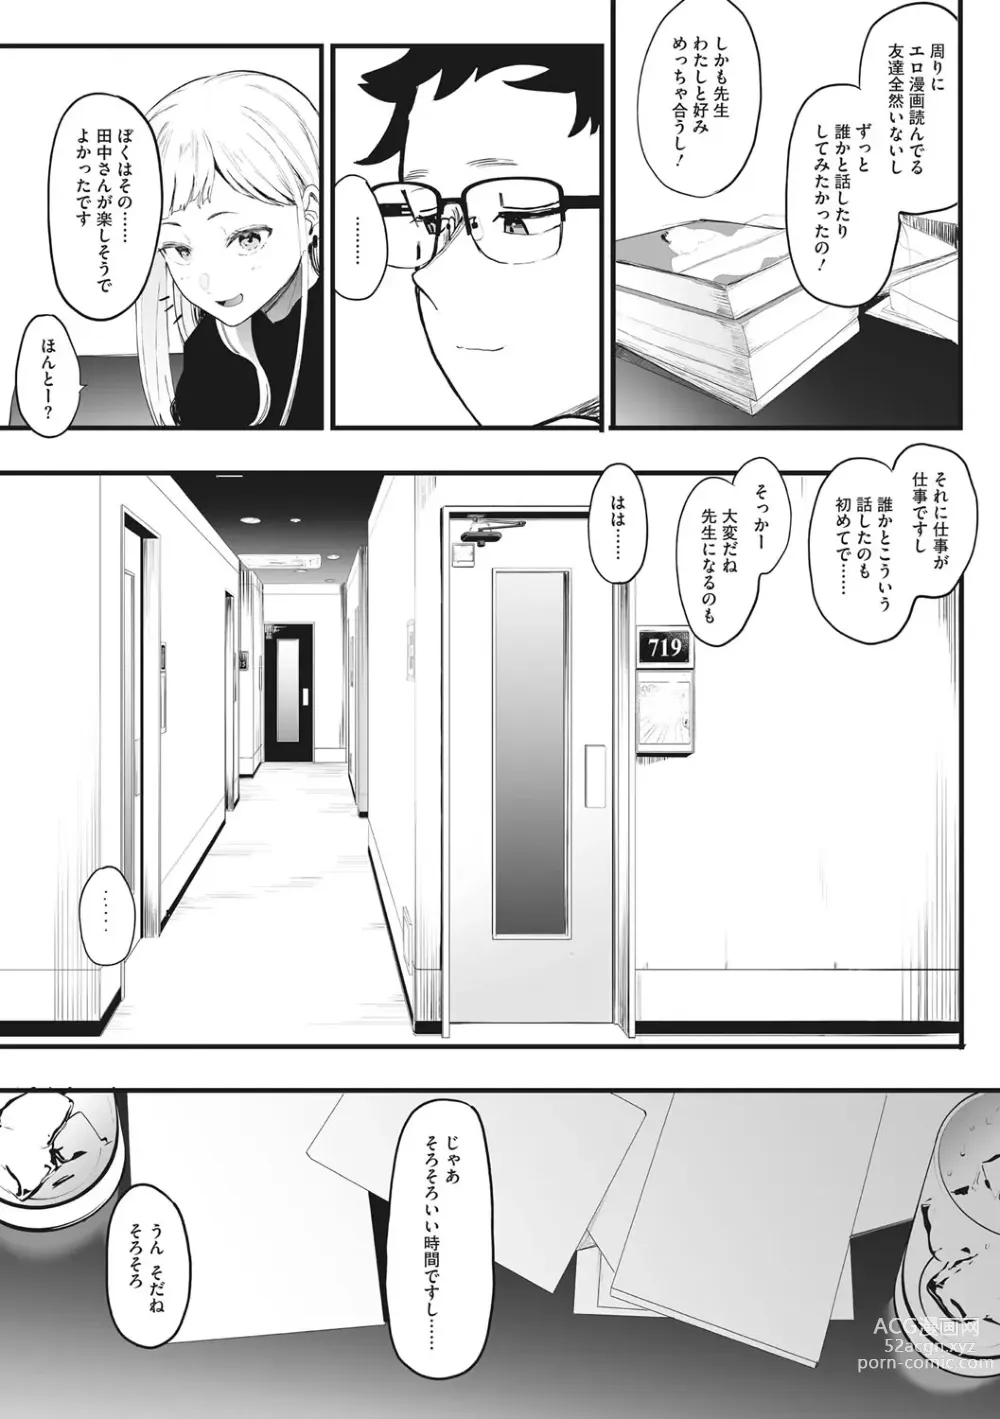 Page 8 of manga Eightman sensei no okagede kanojo ga dekimashita!